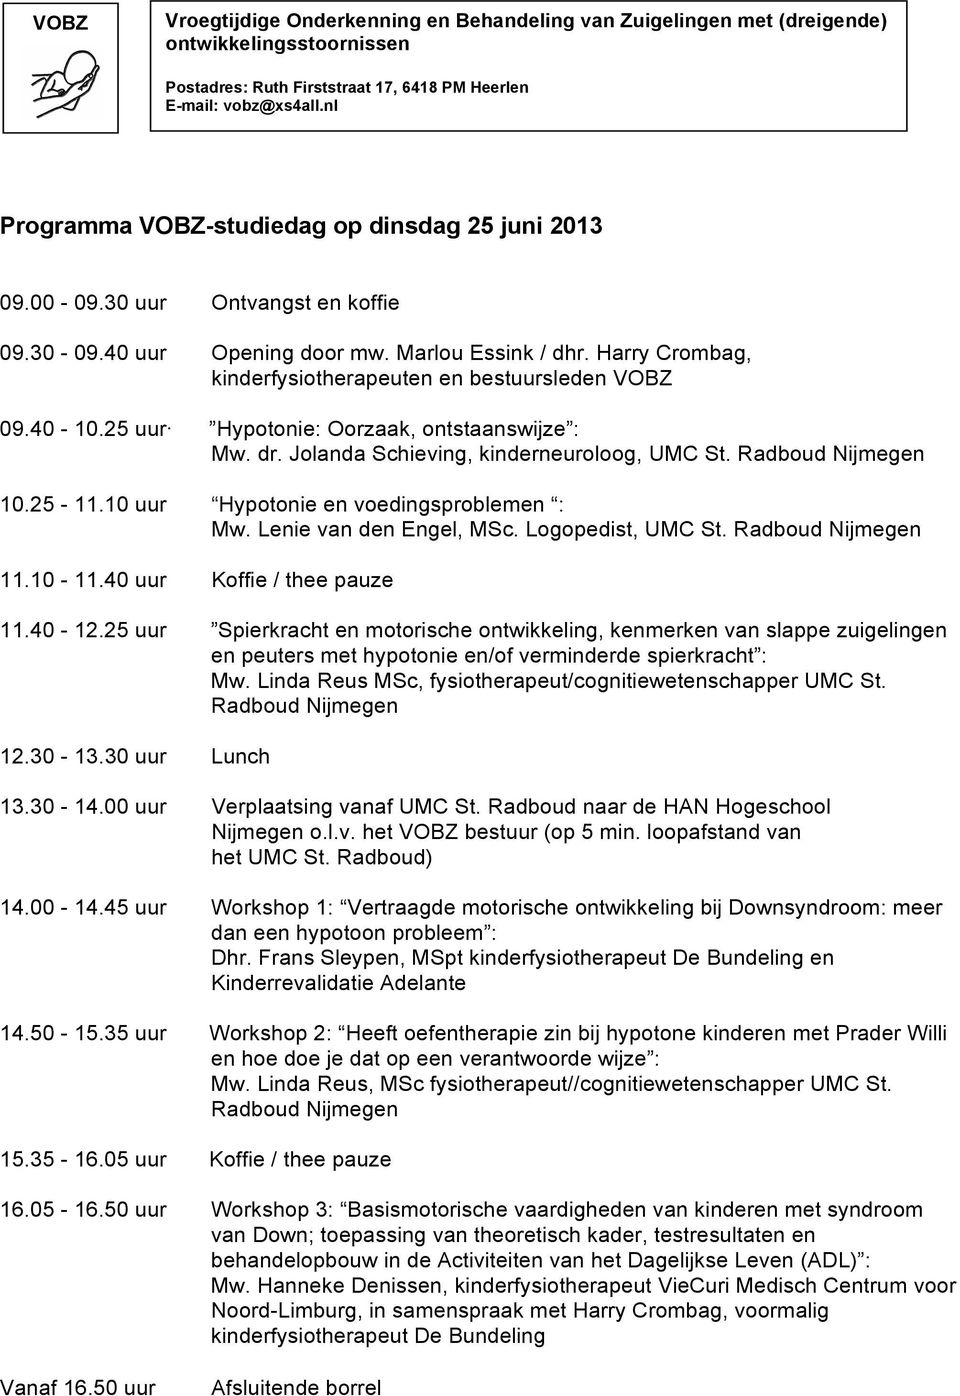 10 uur Hypotonie en voedingsproblemen : Mw. Lenie van den Engel, MSc. Logopedist, UMC St. Radboud Nijmegen 11.10-11.40 uur Koffie / thee pauze 11.40-12.